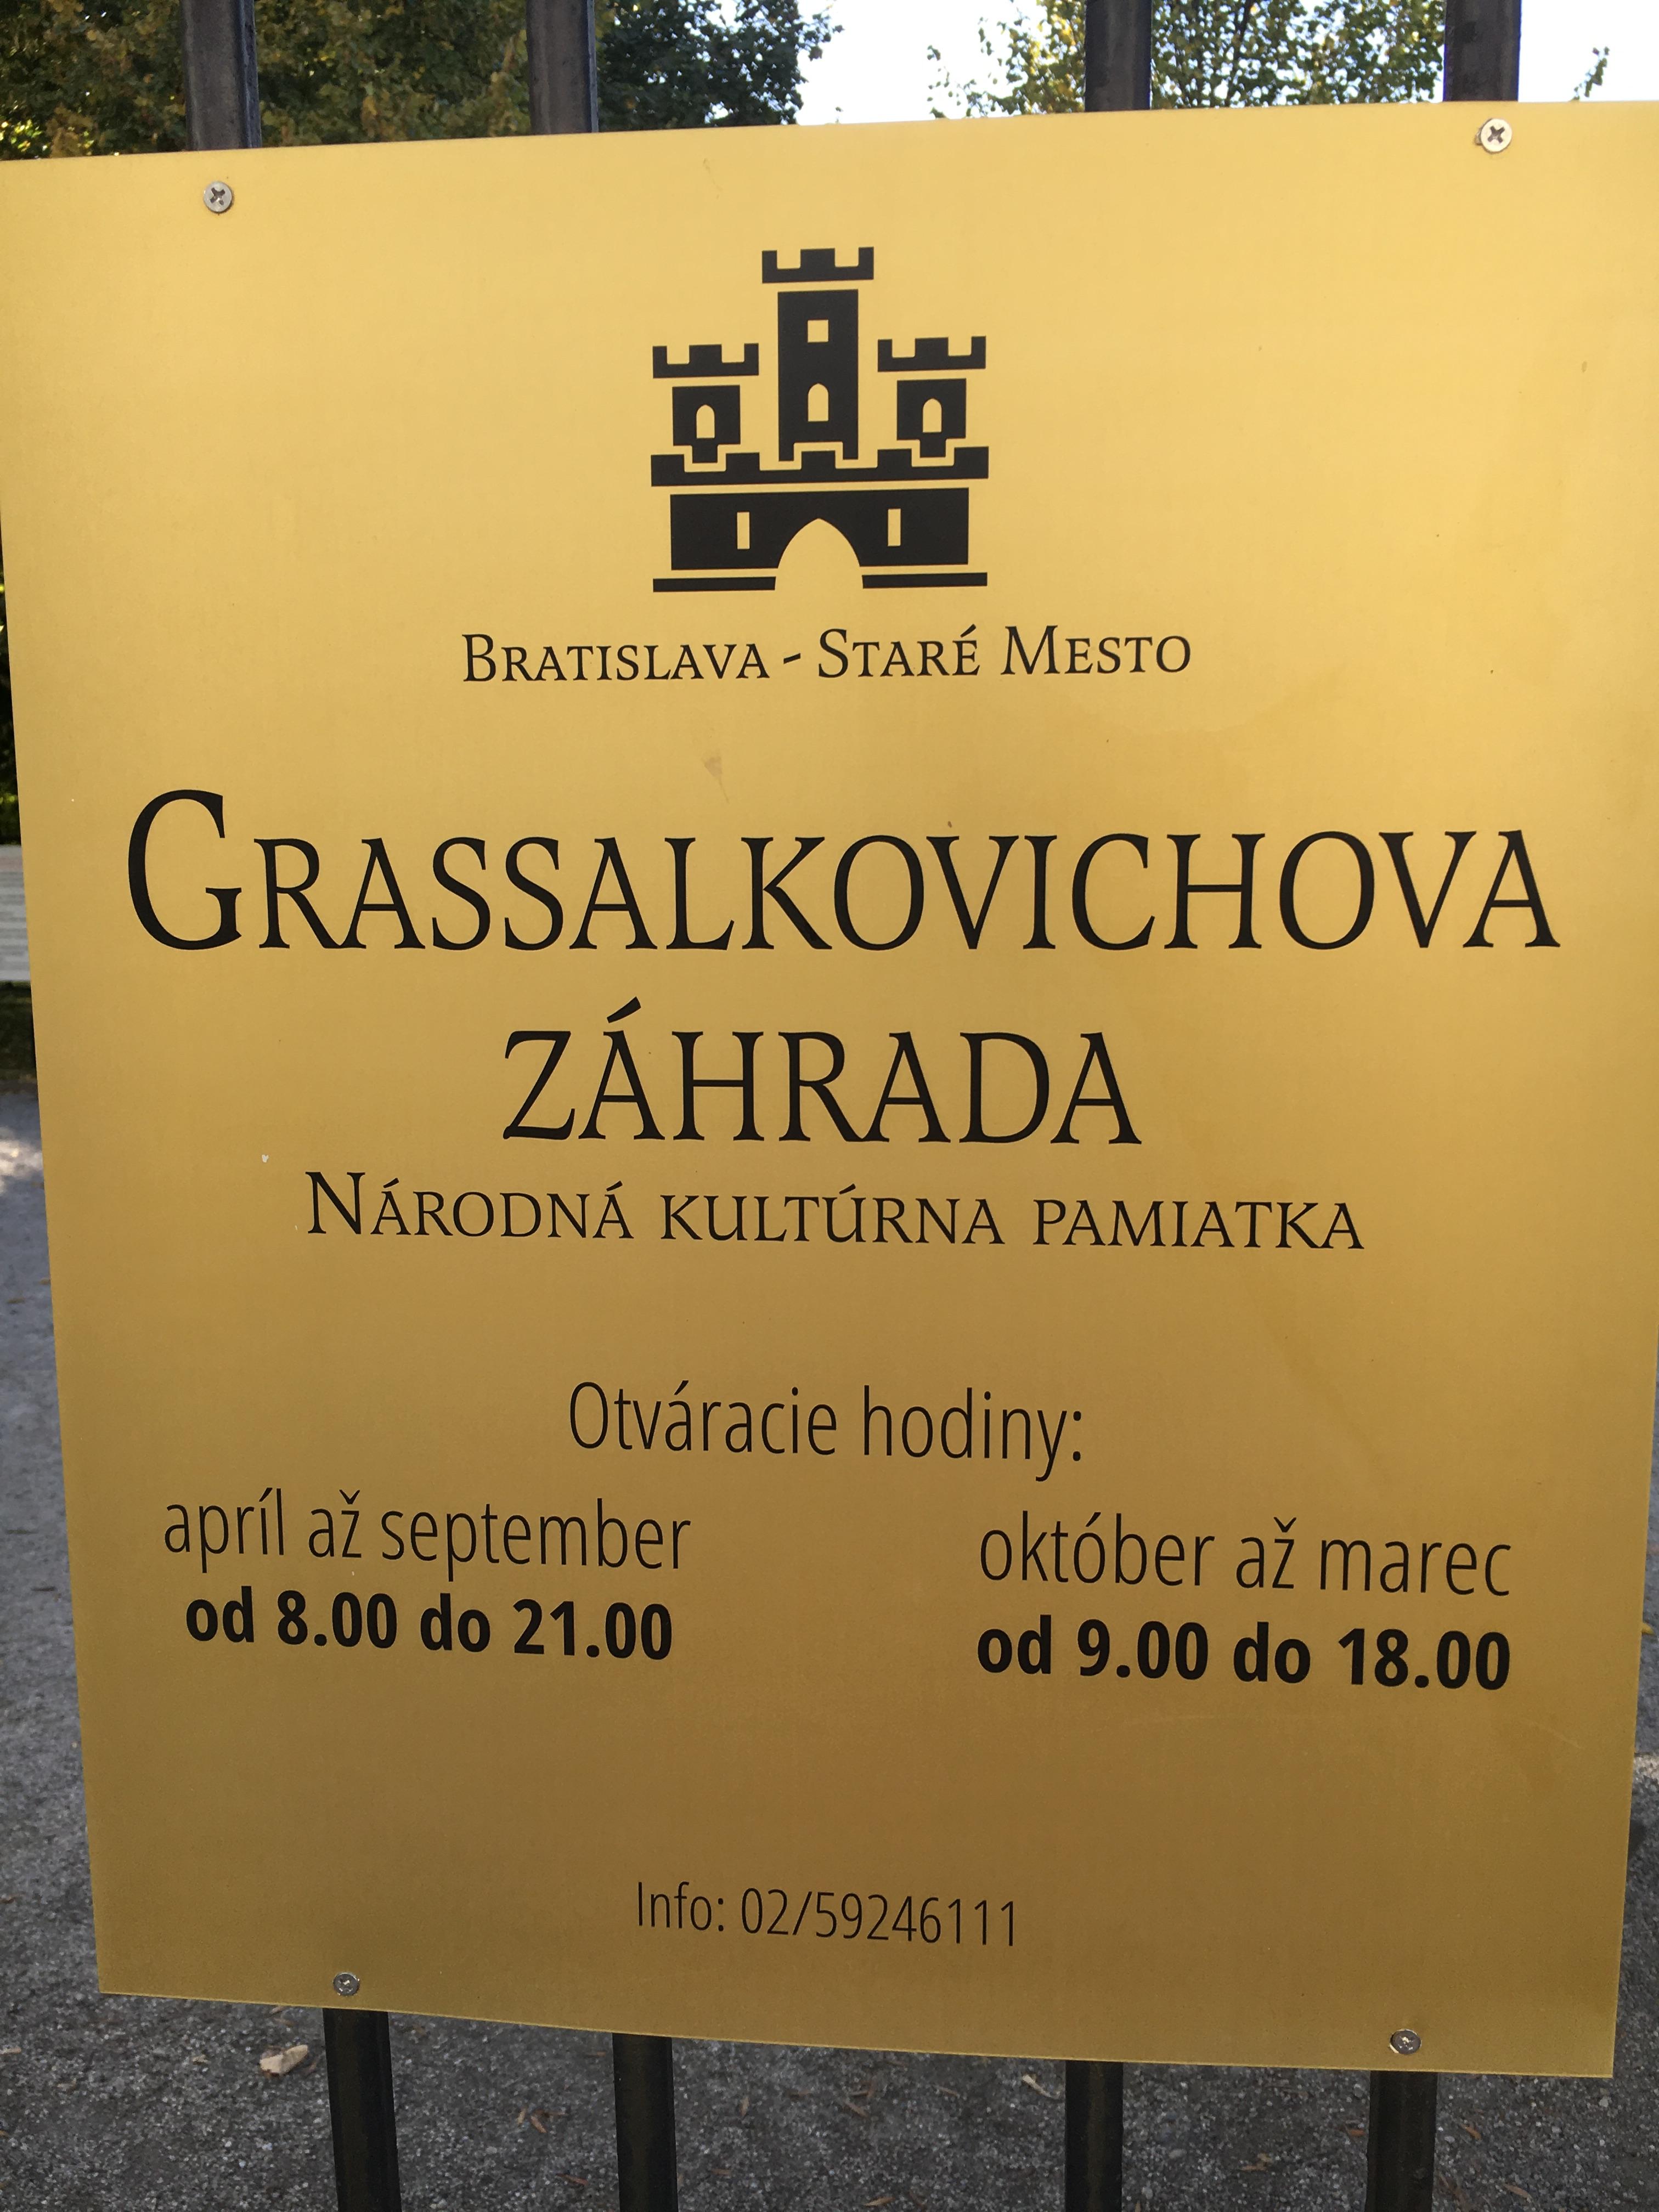 Prezidentská záhrada - otváracie hodiny október, Staré Mesto, Bratislava |  Odkazprestarostu.sk